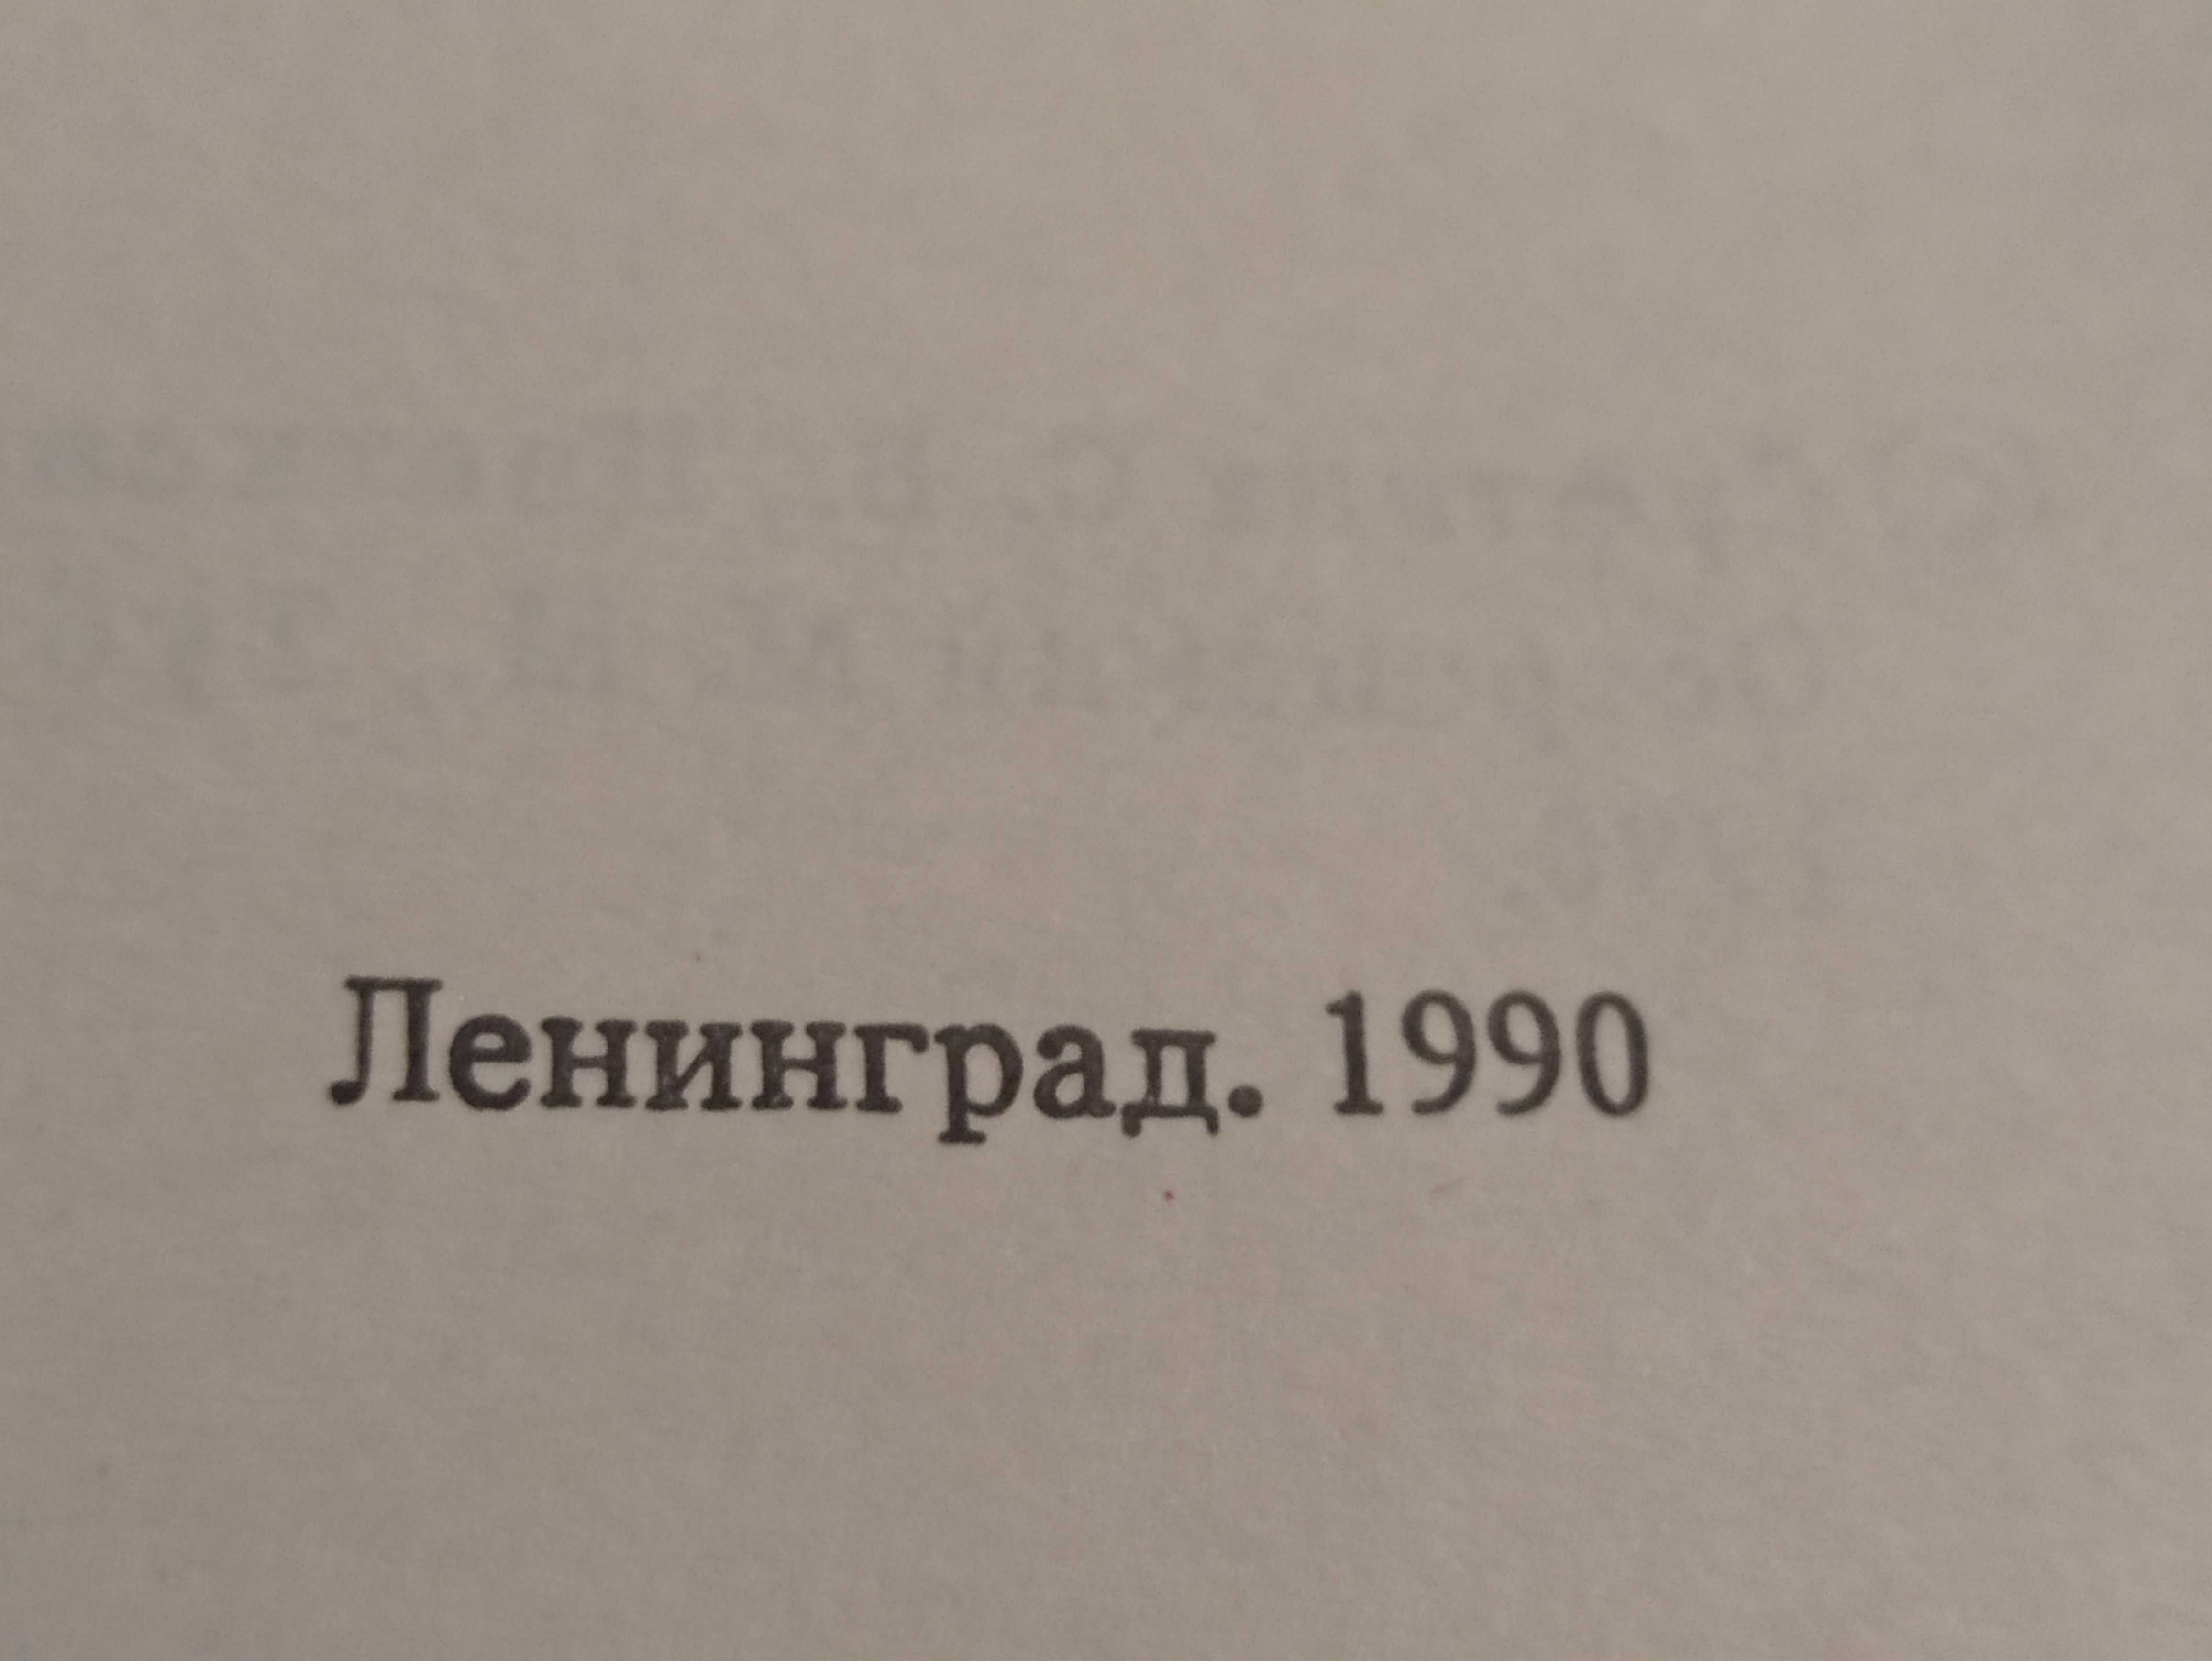 Разговорник итальяно-русский (Ленинград, 1990)бу